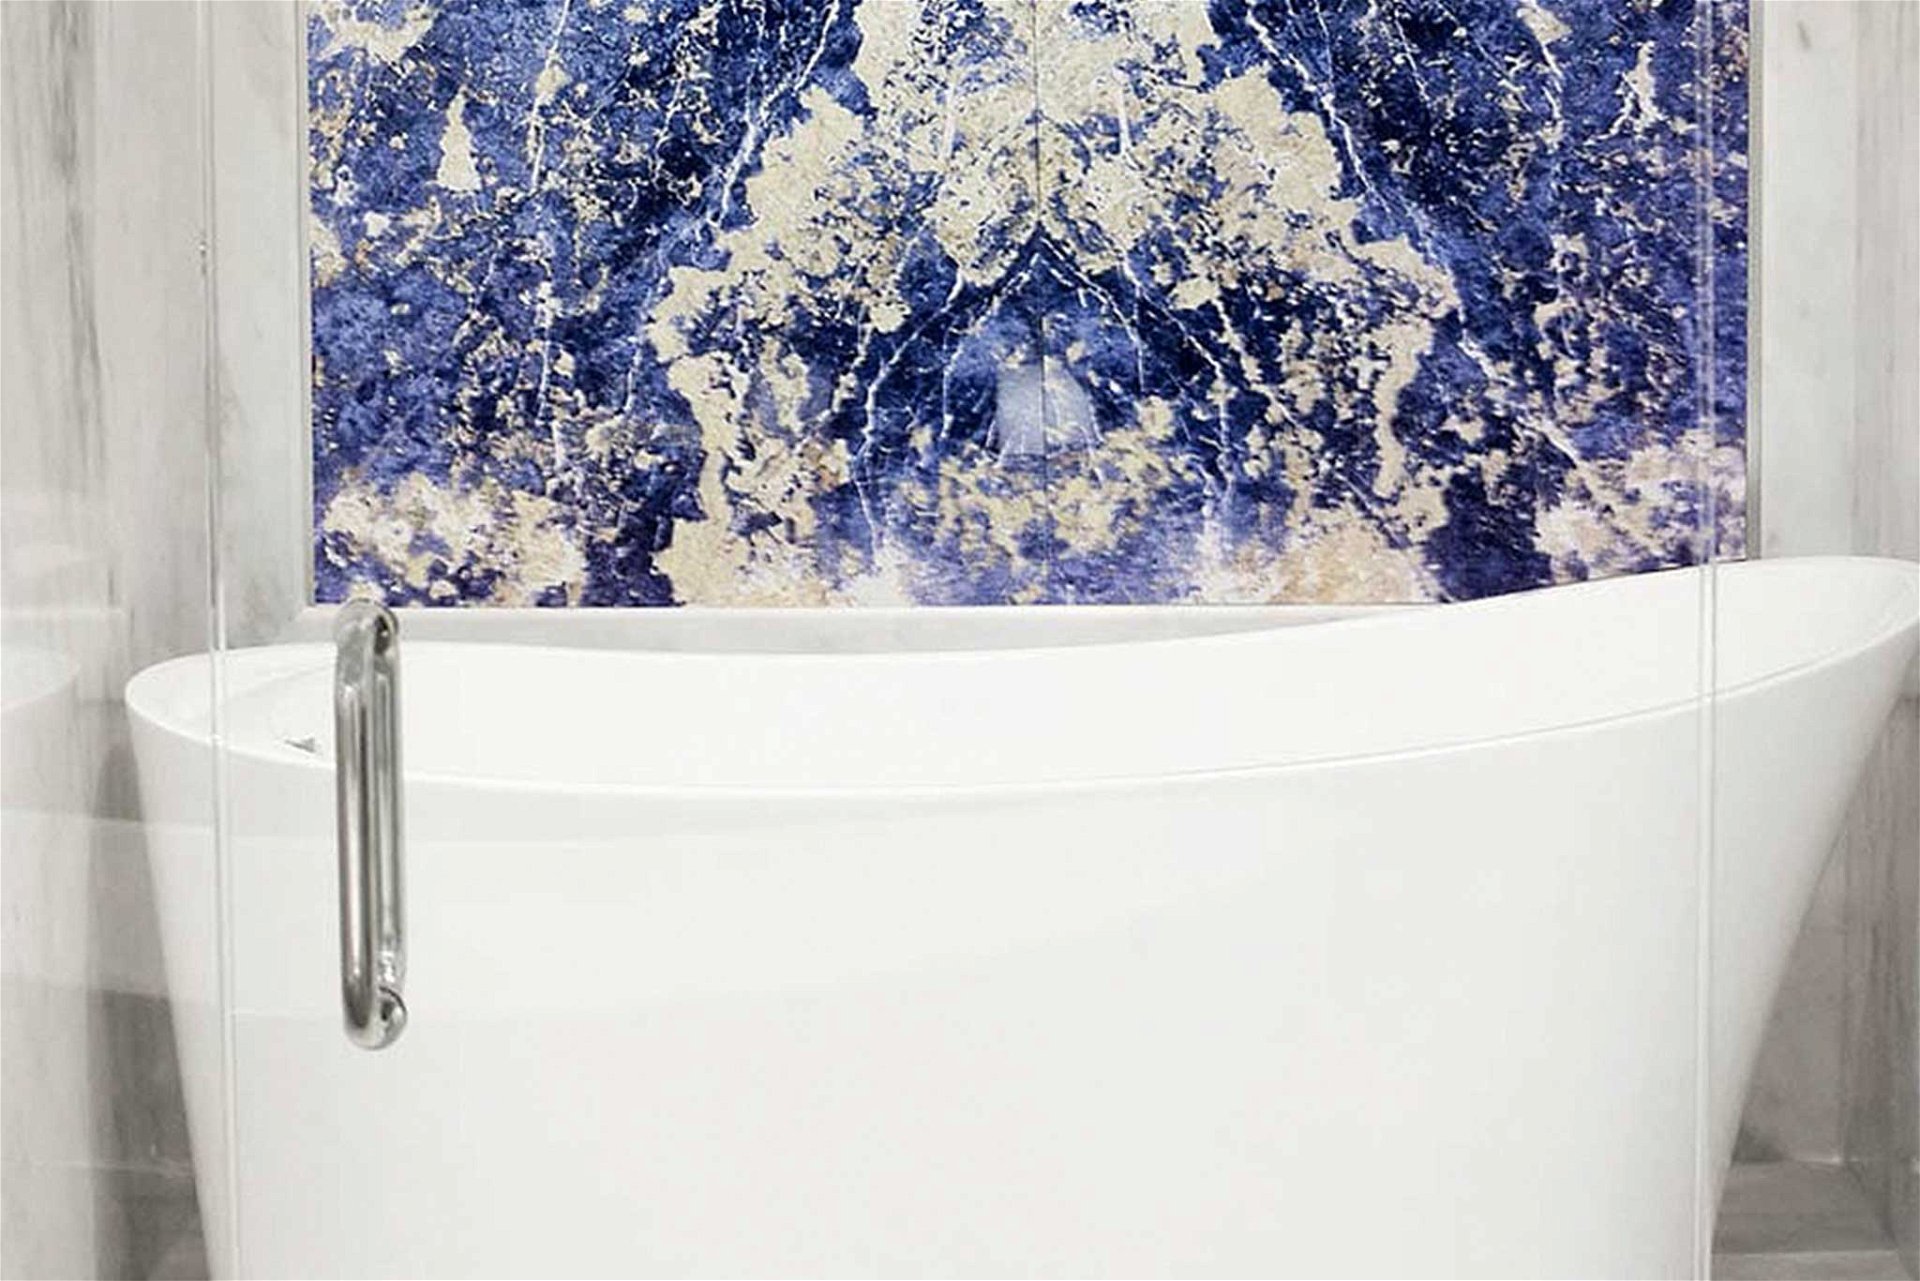 Wie ein modernes Kunstwerk wirkt der großflächige blaue Sodalith-Marmor in diesem Beispiel. Der Stein steht für Ausdauer, Mut und Selbstbewusstsein. tinostone.com